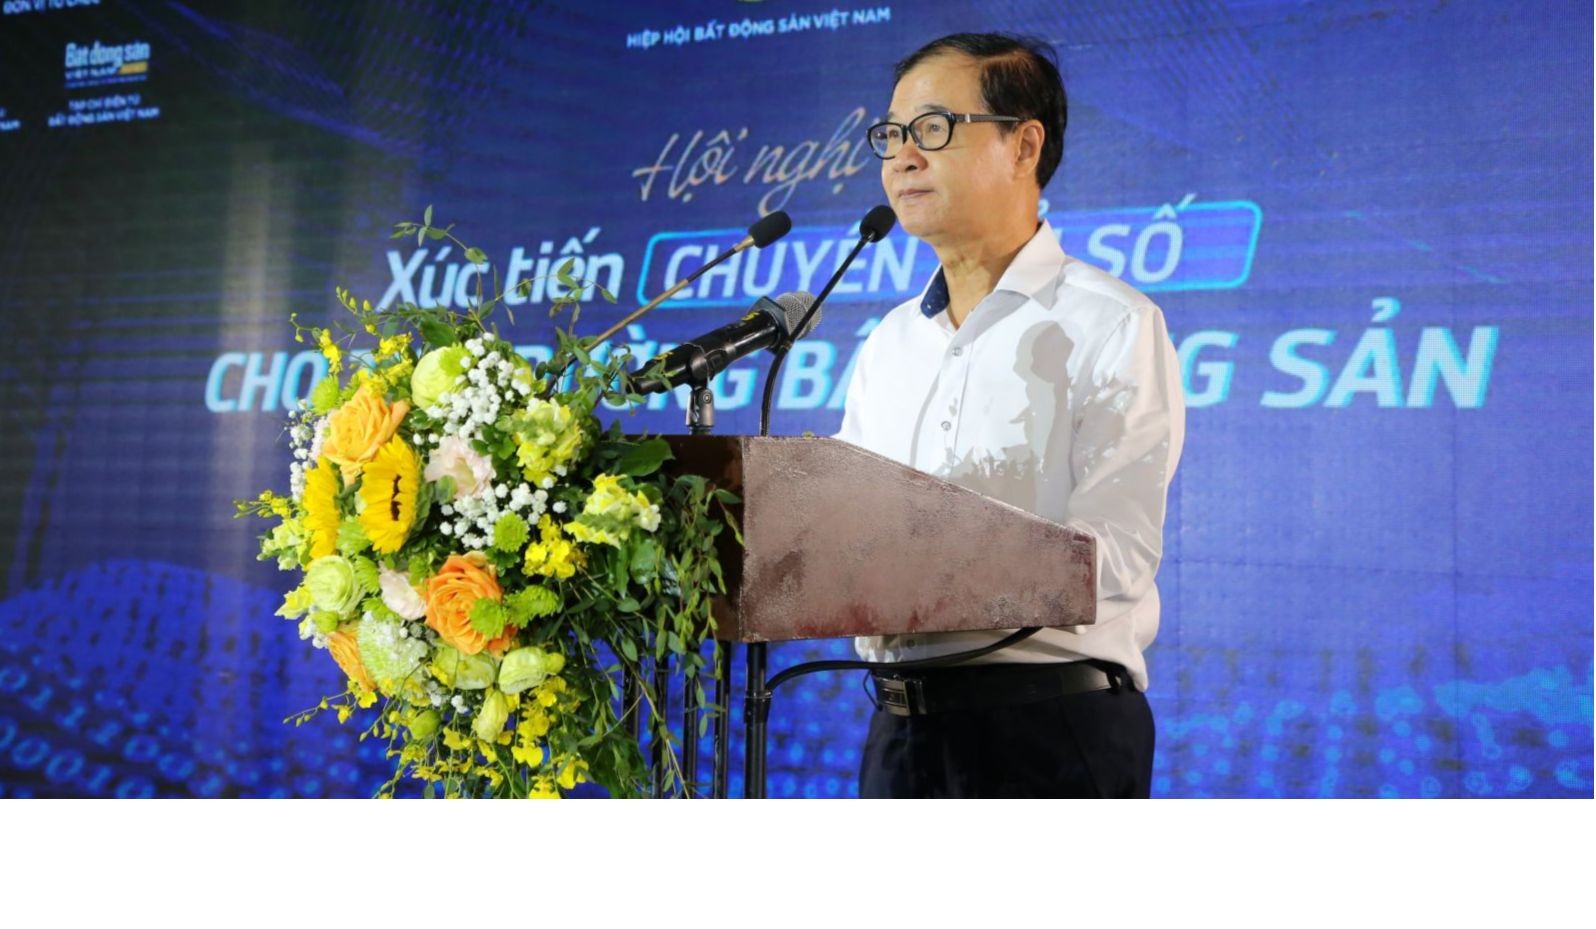 
Ông Nguyễn Mạnh Hà, Phó Chủ tịch thường trực hiệp hội bất động sản Việt Nam
